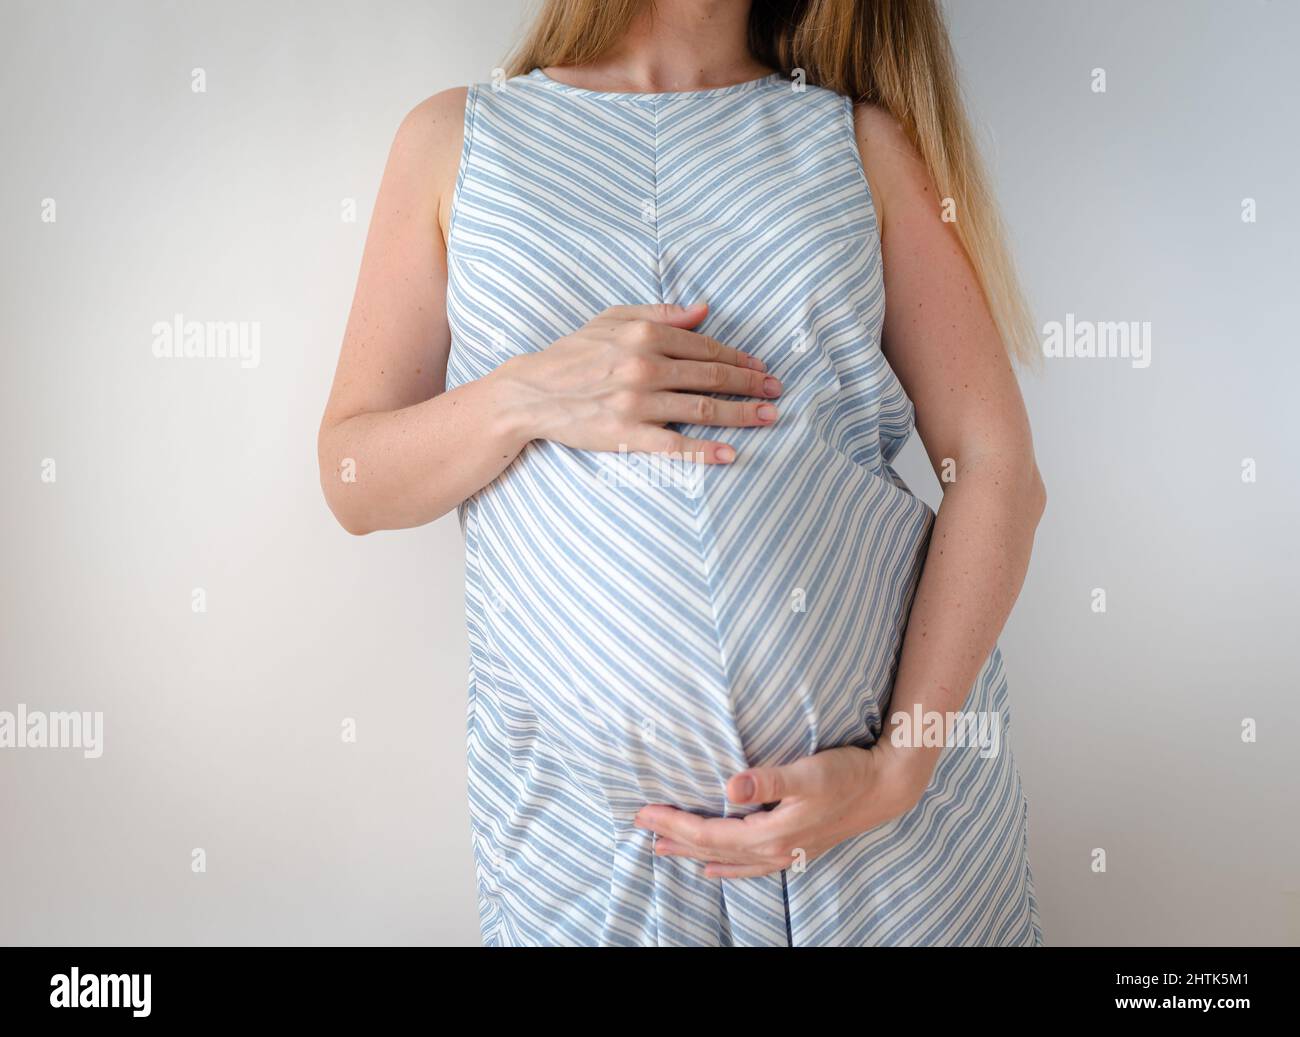 une femme enceinte vêtue d'une robe bleue avec une bande blanche, se tient sur un fond blanc et tient ses mains sur son ventre, le concept d'attendre un Banque D'Images